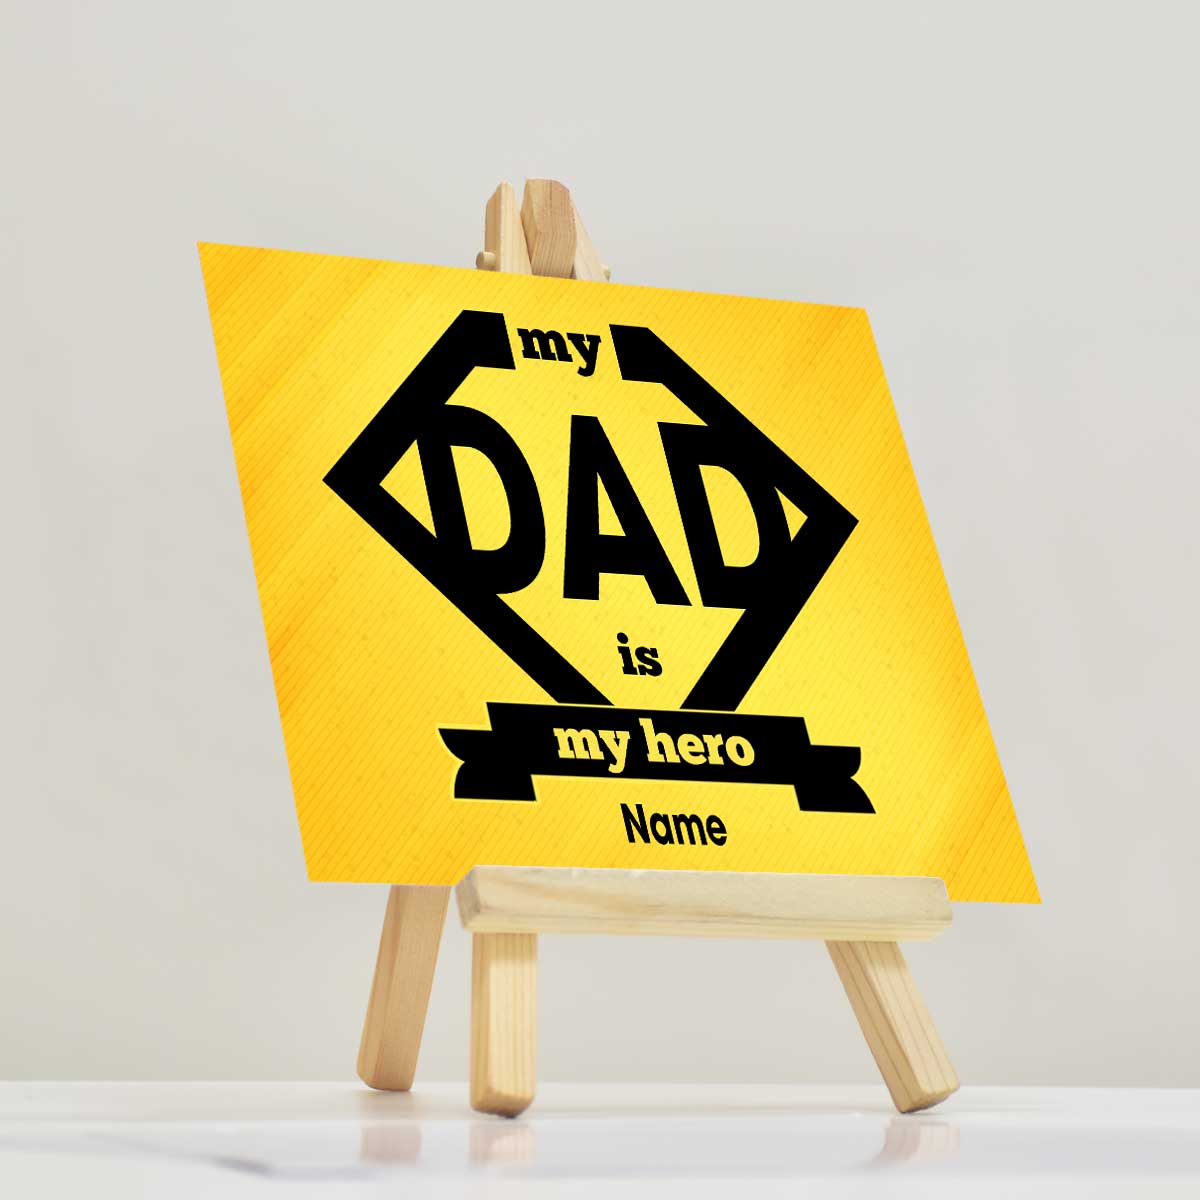 Personalised My Dad Is My Hero Mini Easel